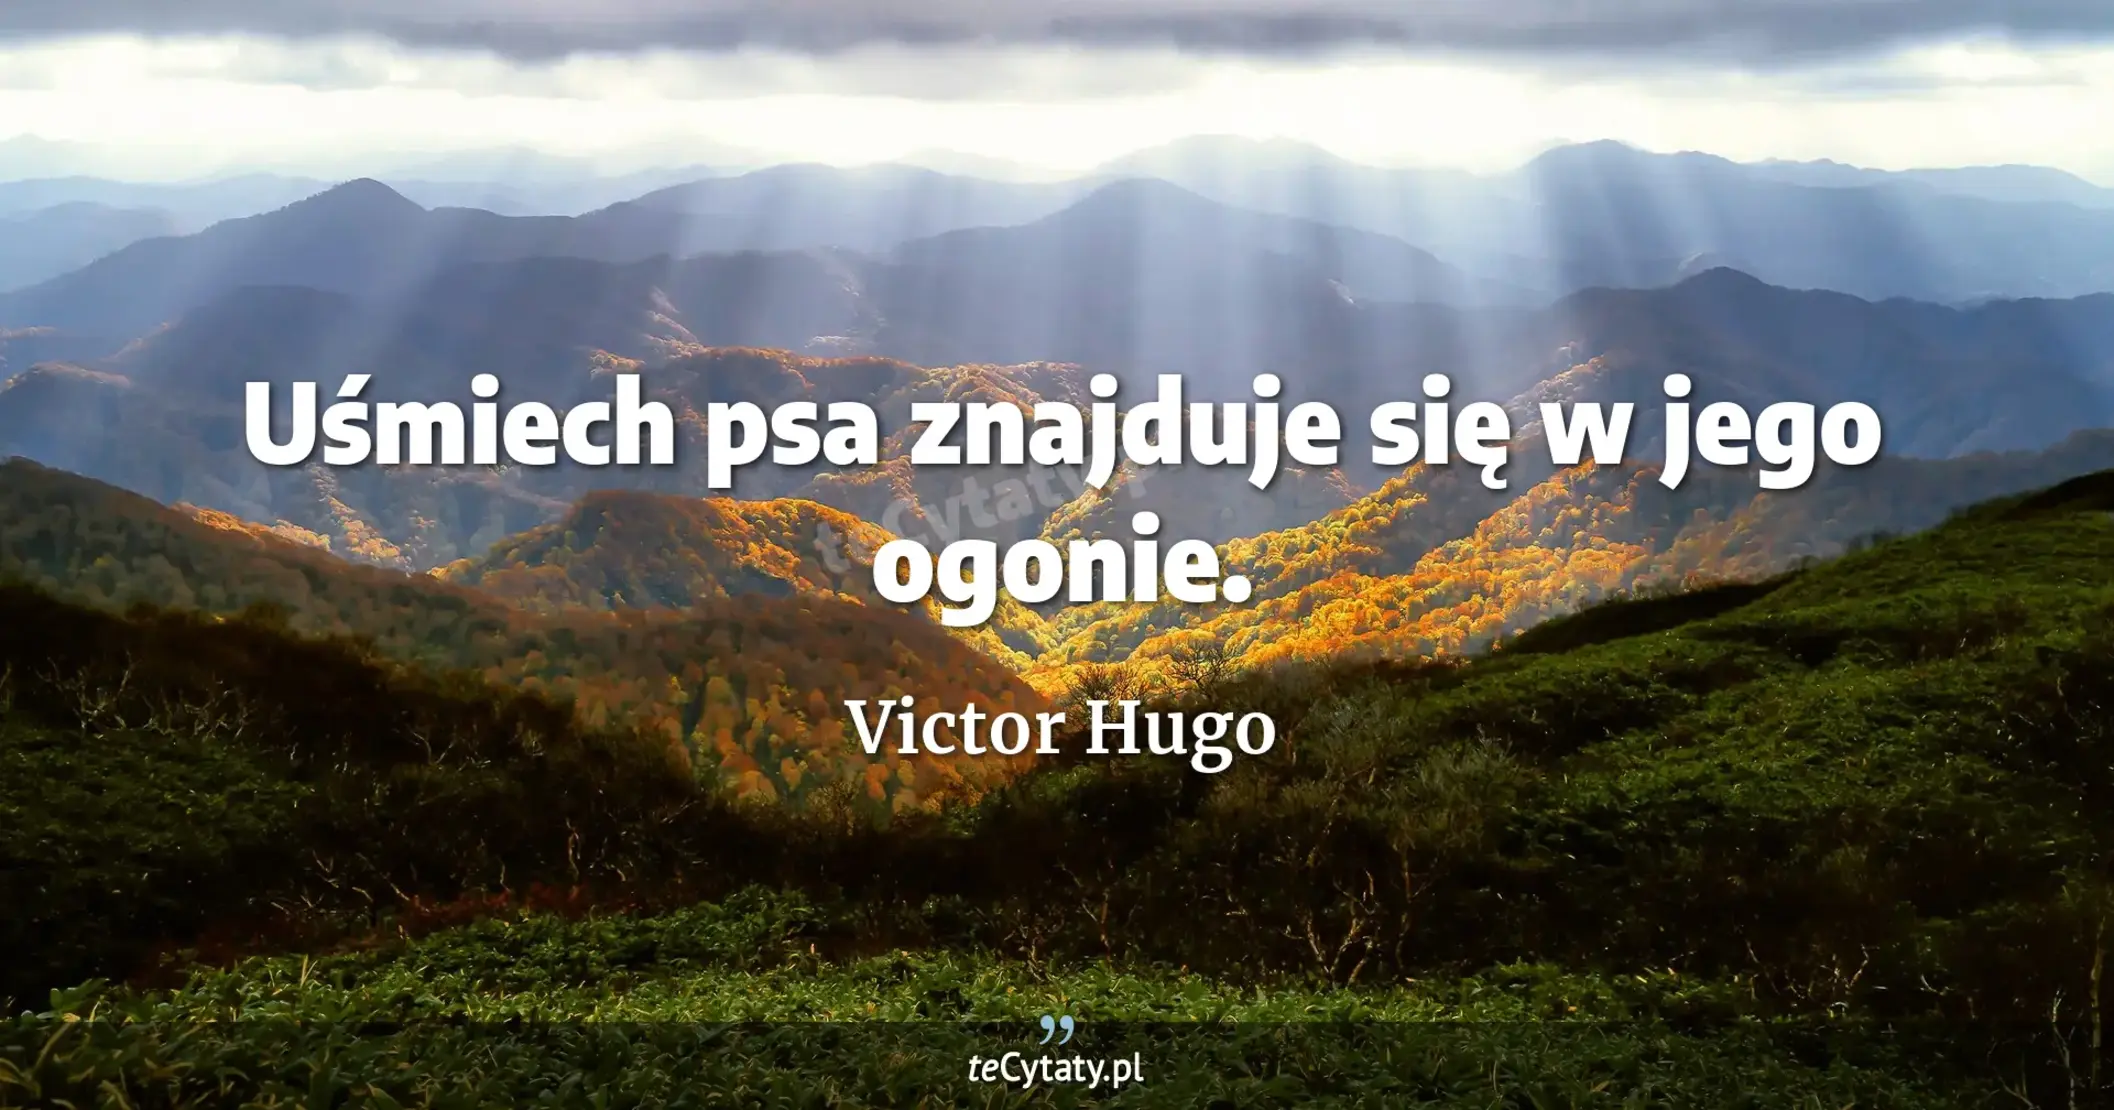 Uśmiech psa znajduje się w jego ogonie. - Victor Hugo